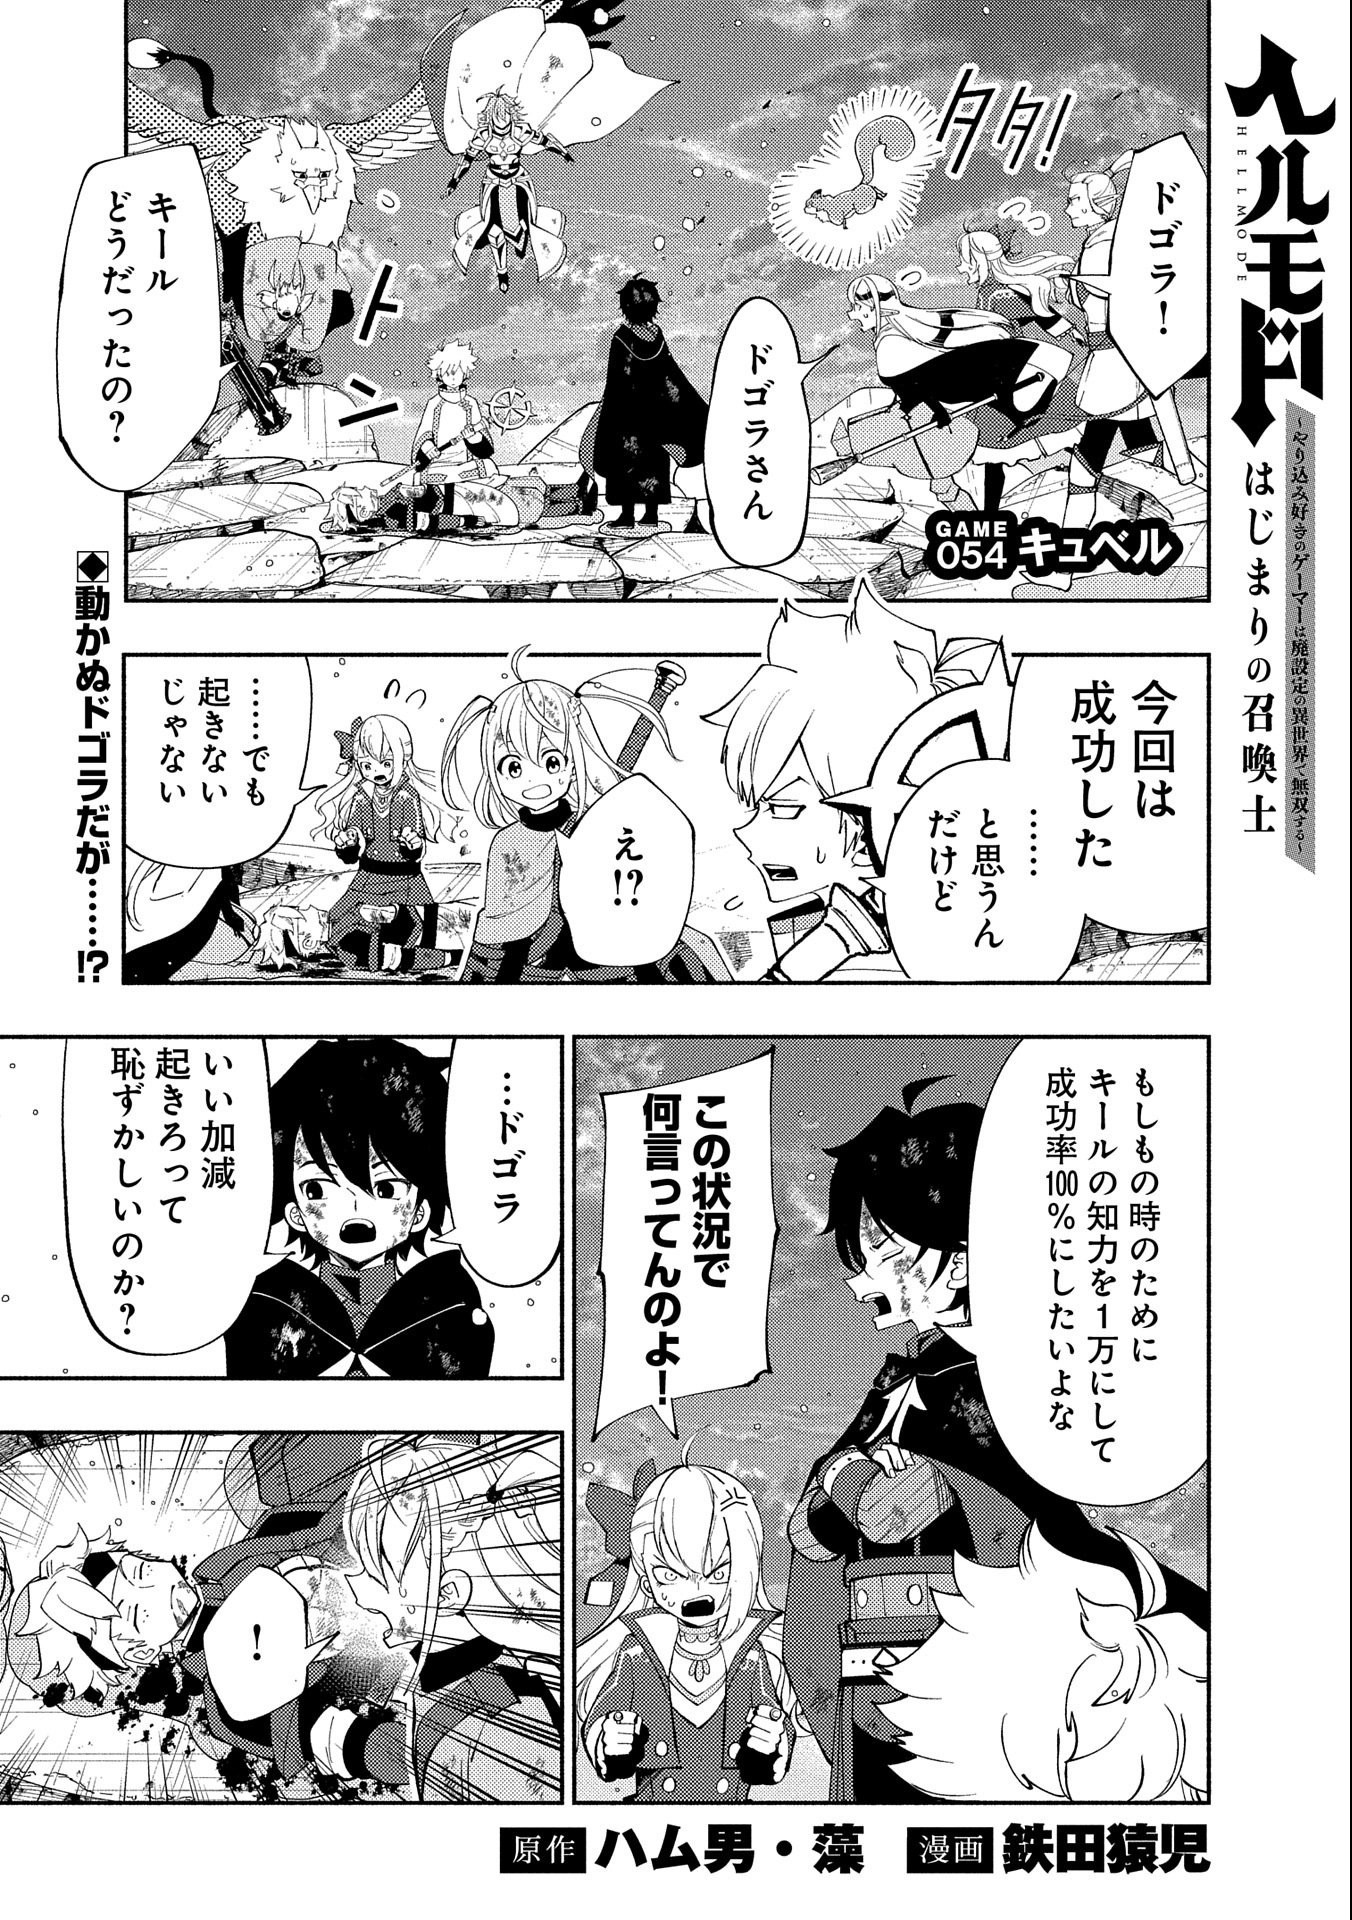 Hell Mode: Yarikomi Suki no Gamer wa Hai Settei no Isekai de Musou Suru - Chapter 54 - Page 1